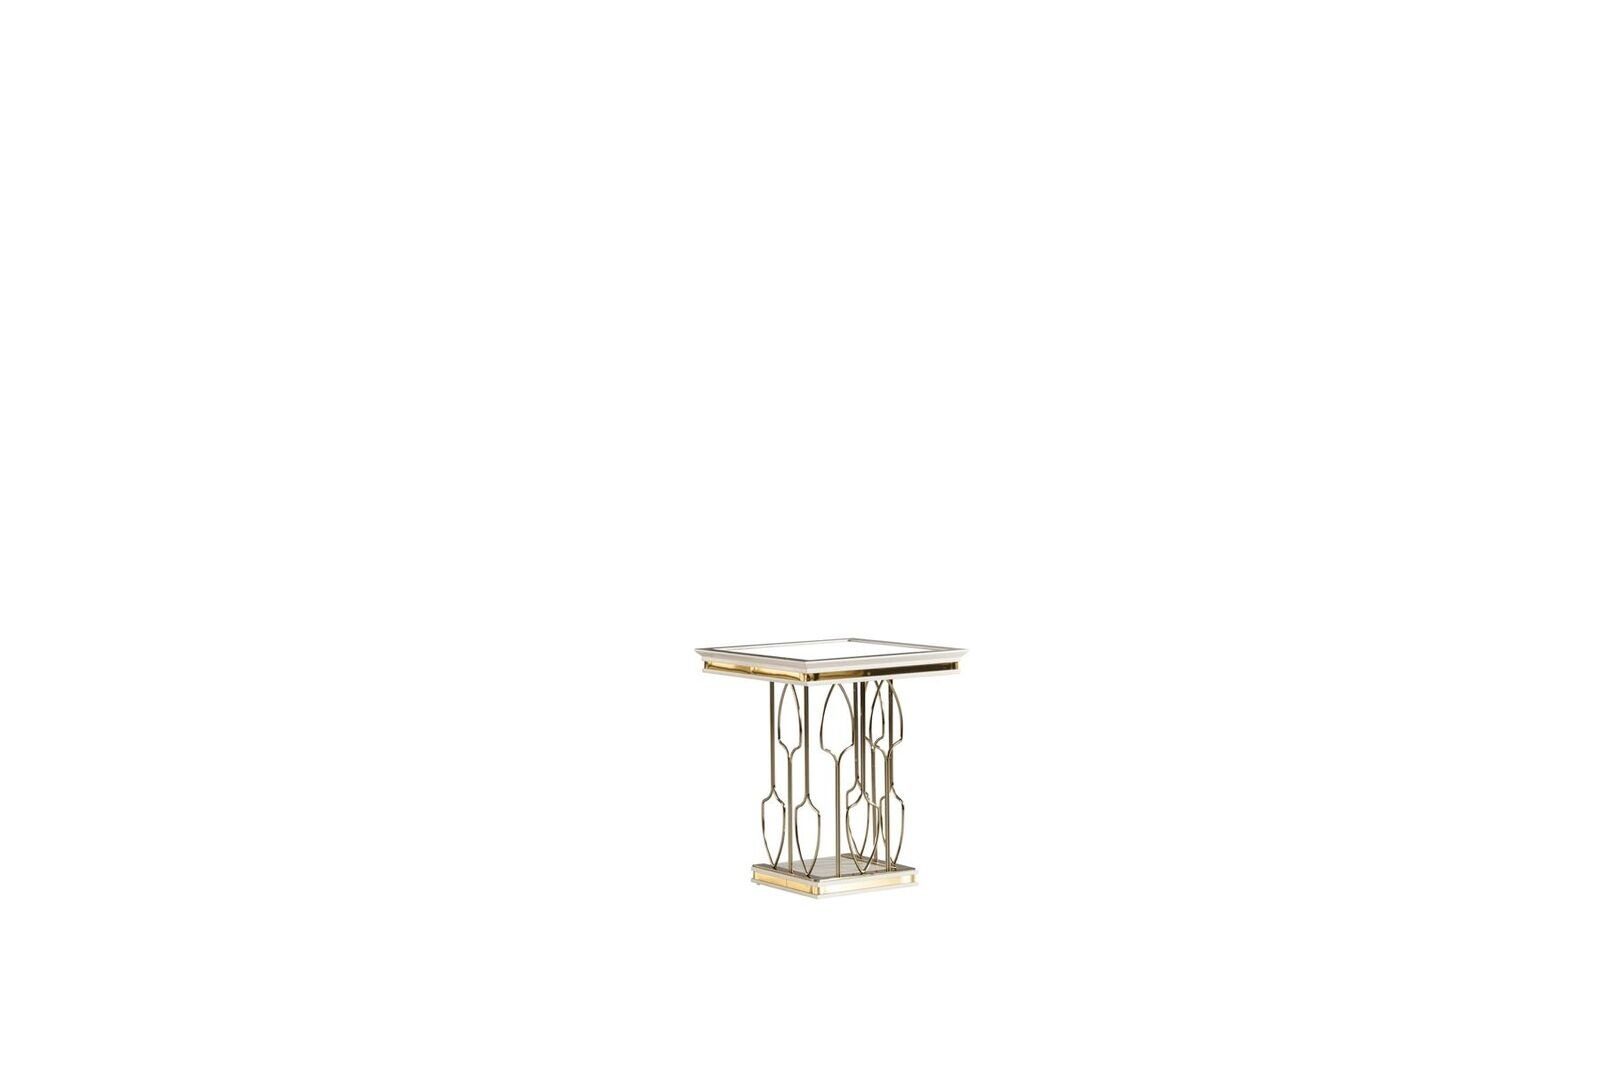 JVmoebel Beistelltisch Beistelltisch Weiß Couchtisch Luxus Wohnzimmer Metall Möbel Elegantes